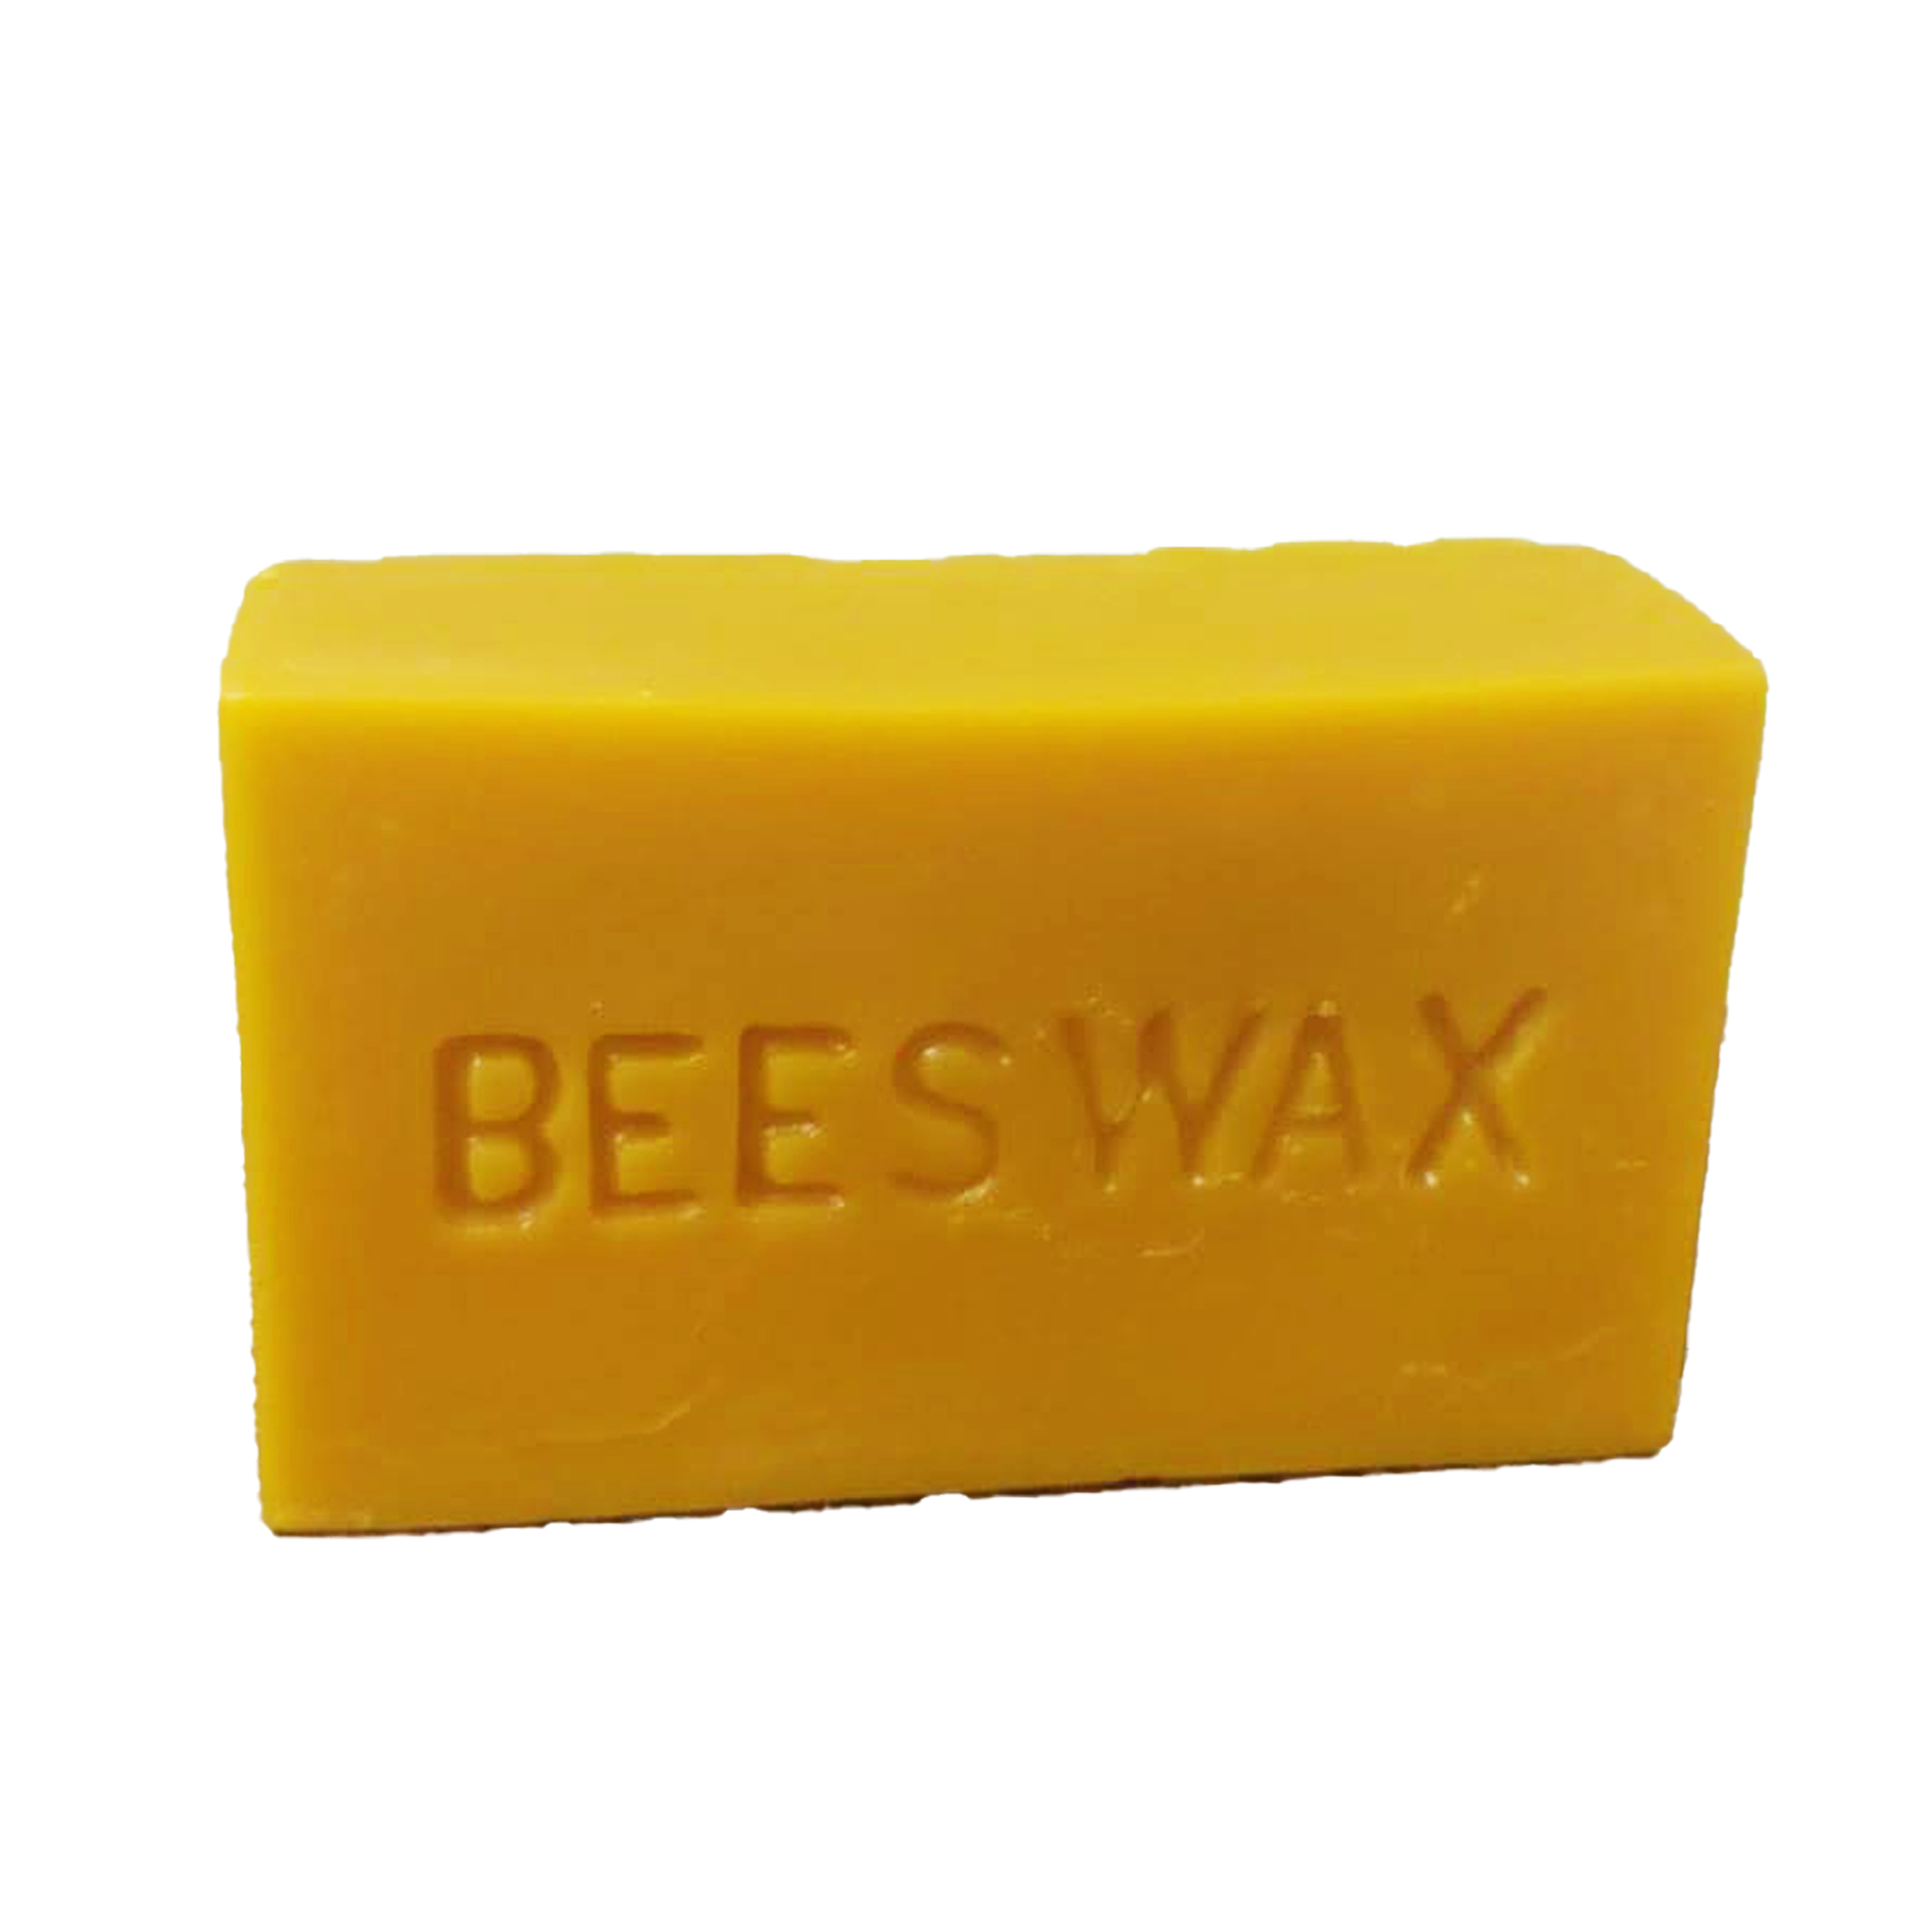 one pound pure Nova Scotia beeswax